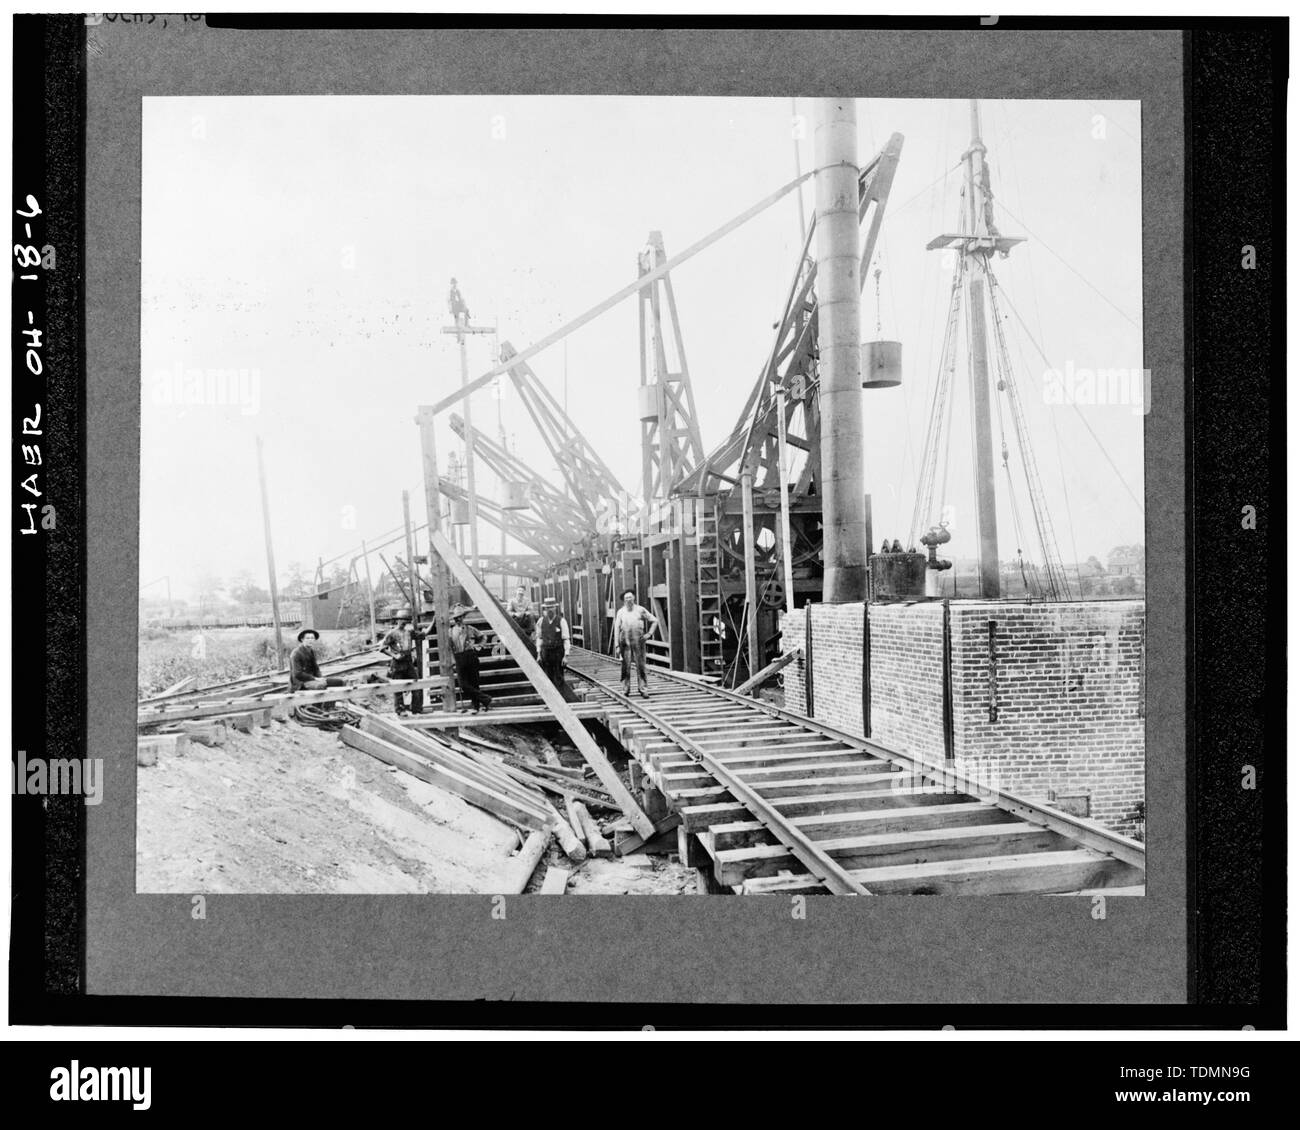 Le minerai de fer - Pennsylvania Dock, le lac Érié à Whiskey Island, à environ 1,5 milles à l'ouest de place publique, de Cleveland, comté de Cuyahoga, OH Banque D'Images